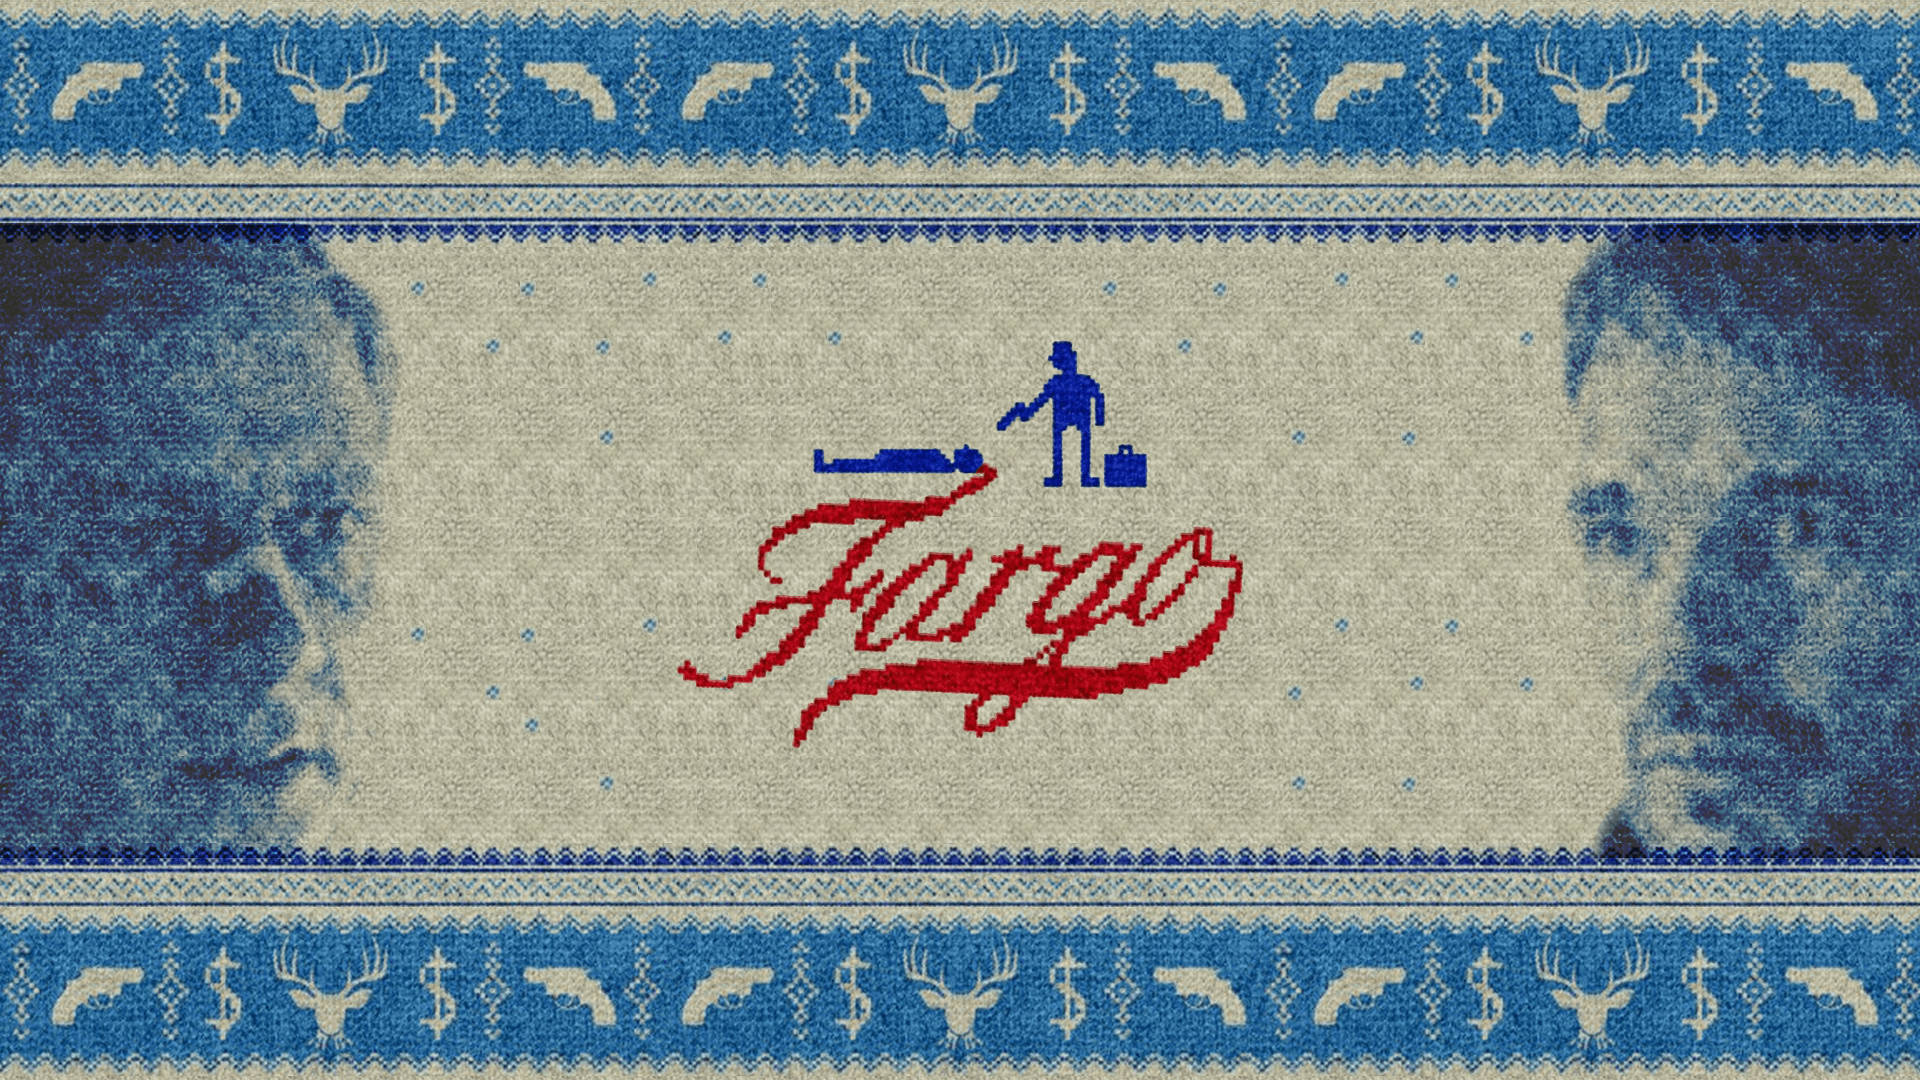 Designdel Poster Inquietante Dalla Celebre Serie Fargo Sfondo